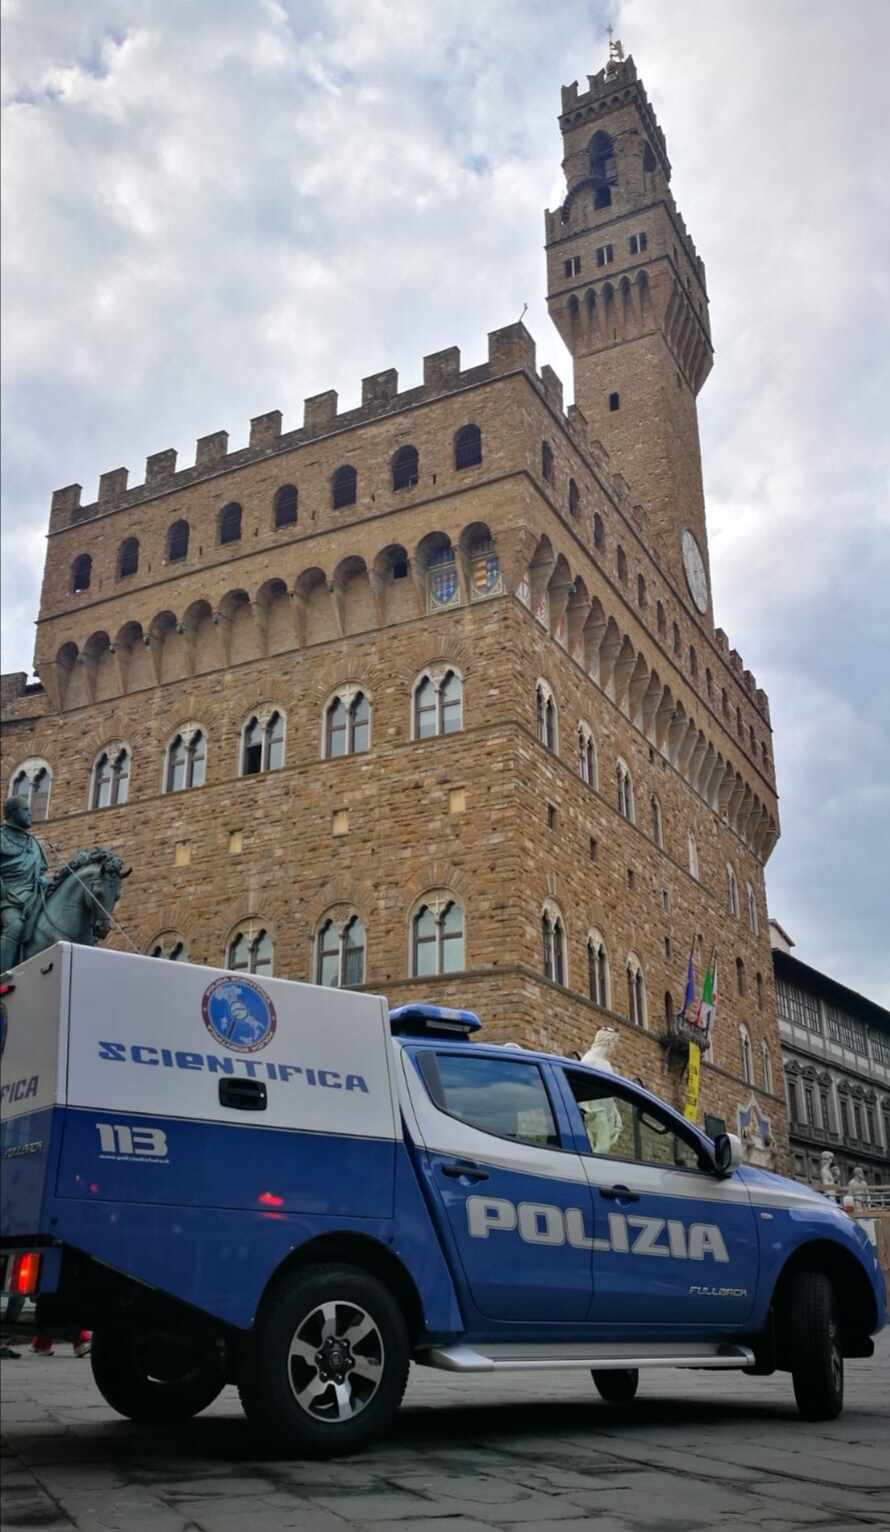 Il “Forensic Fullback” della Polizia di Stato entra in servizio anche in Toscana